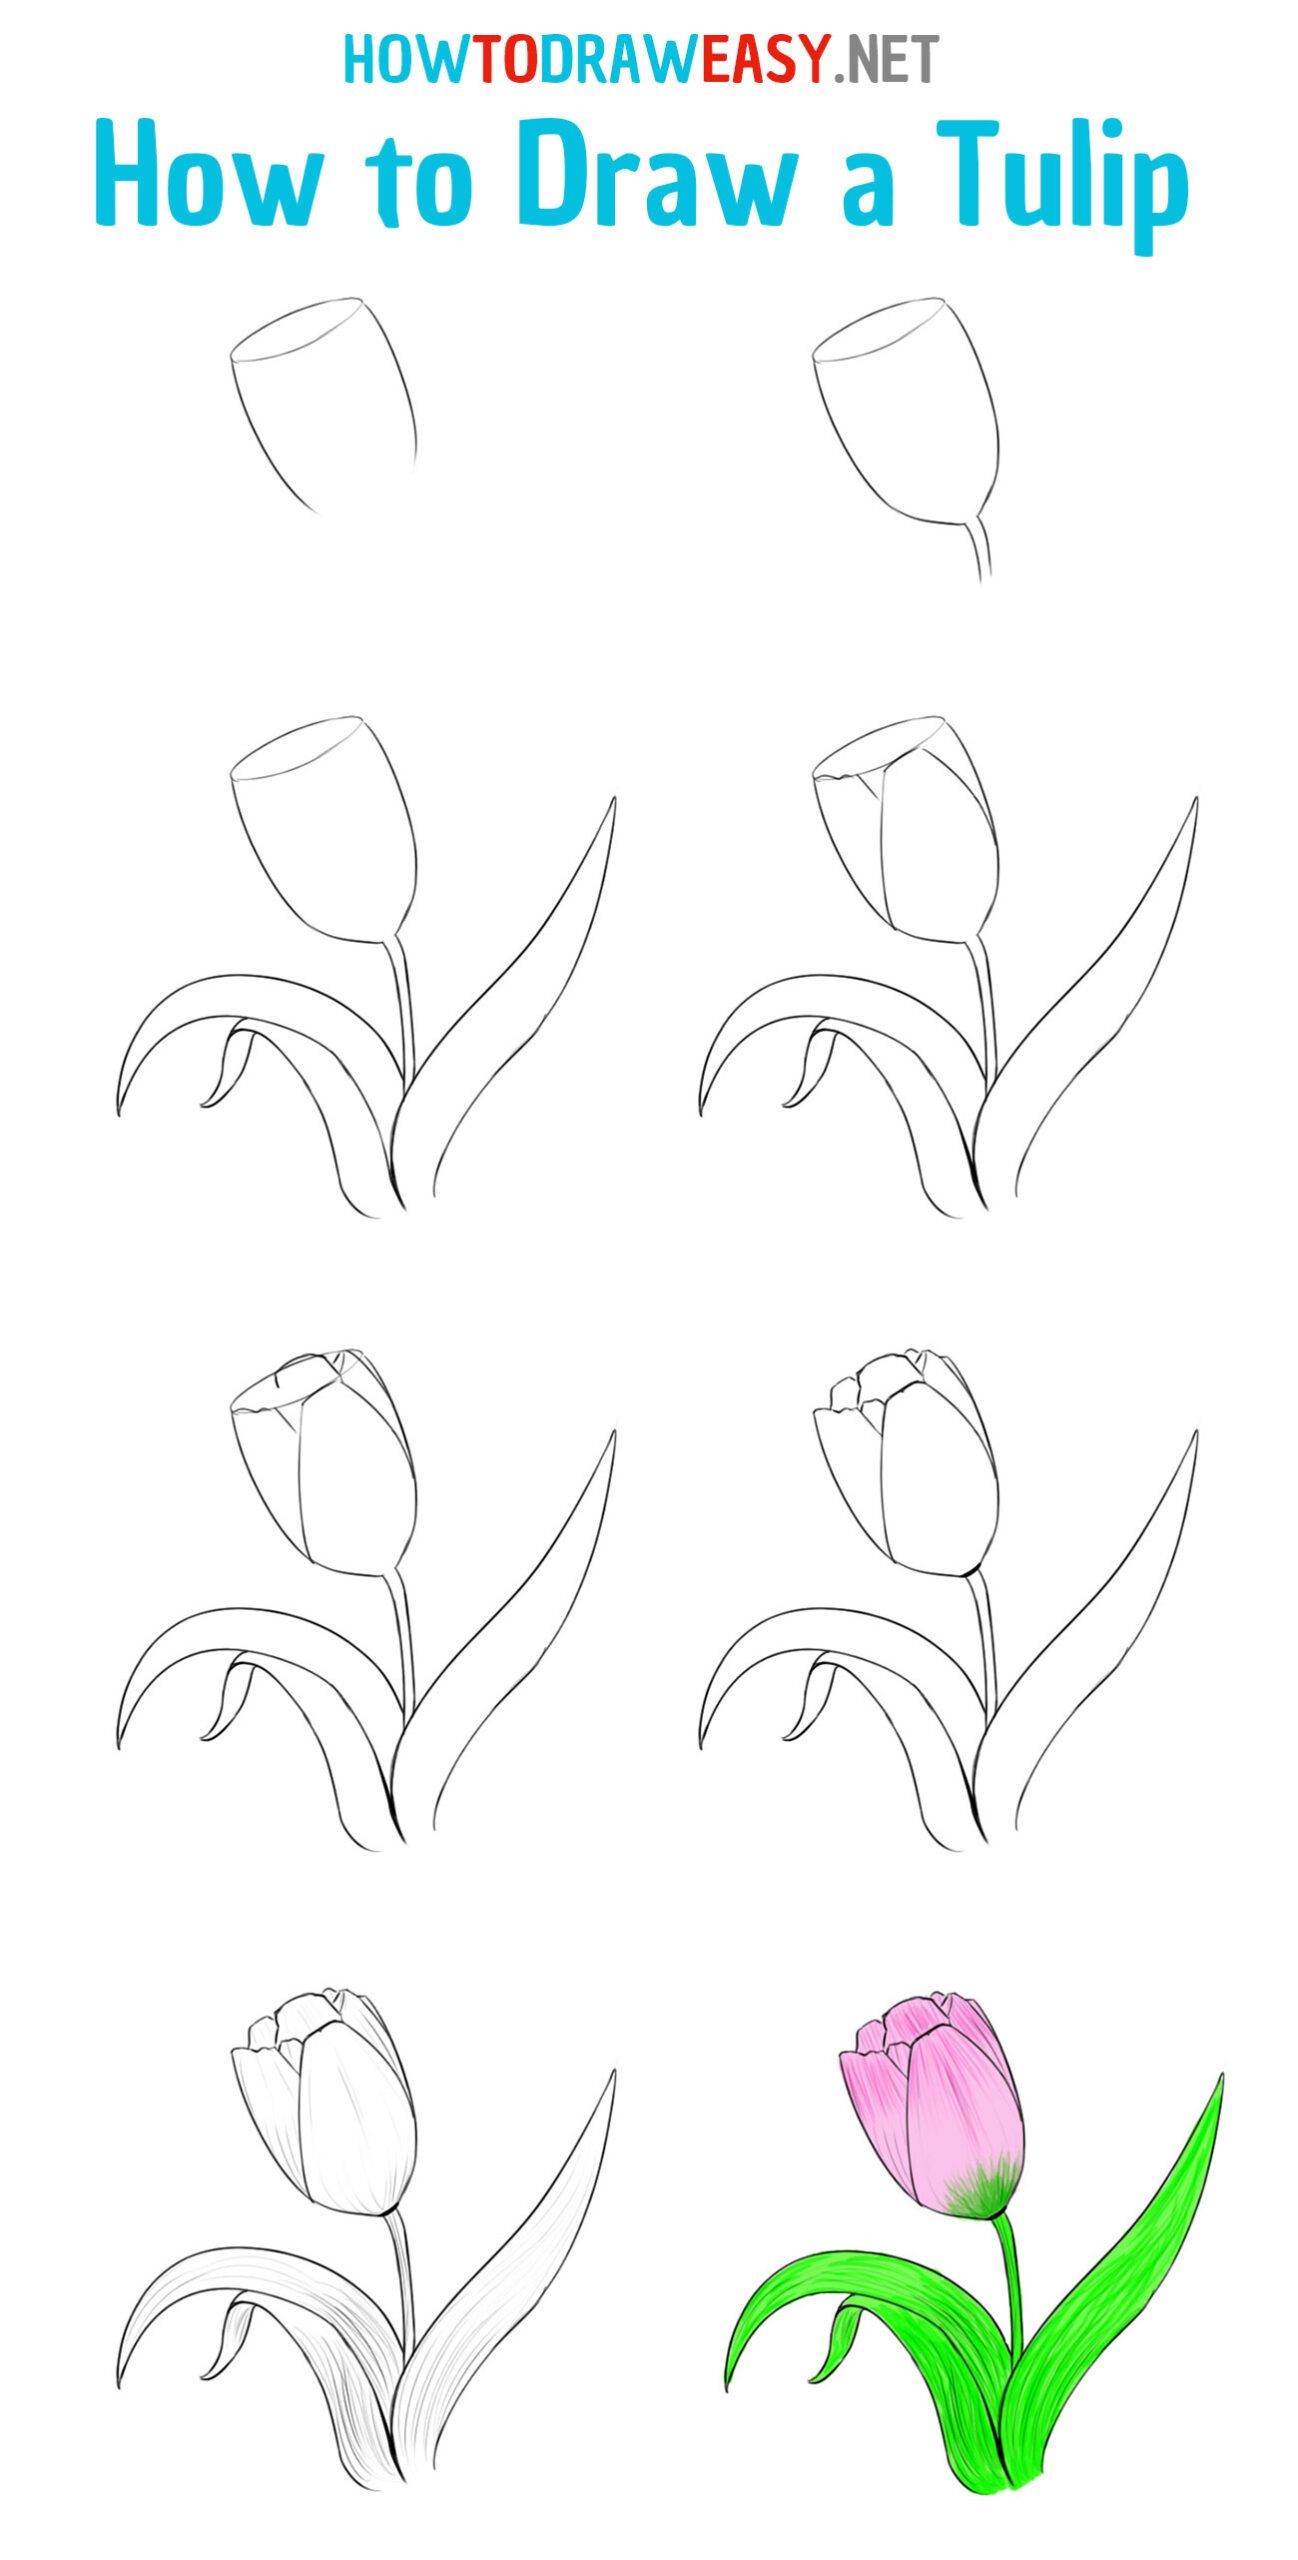 Tulpenidee 3 zeichnen ideen